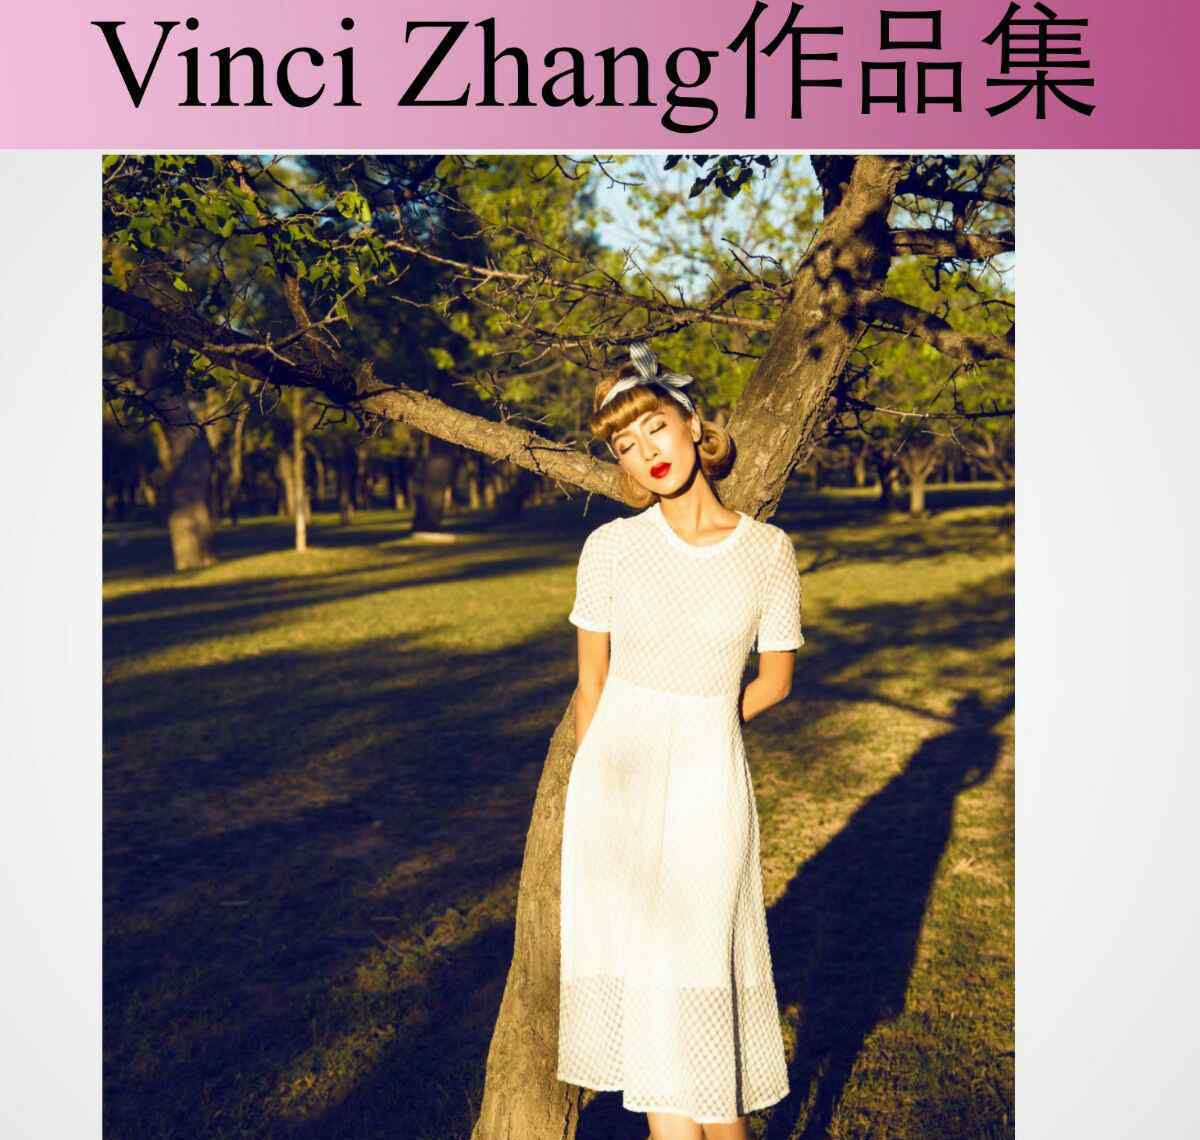 vincizhang创始人 VinciZhang这个品牌的衣服好看吗？